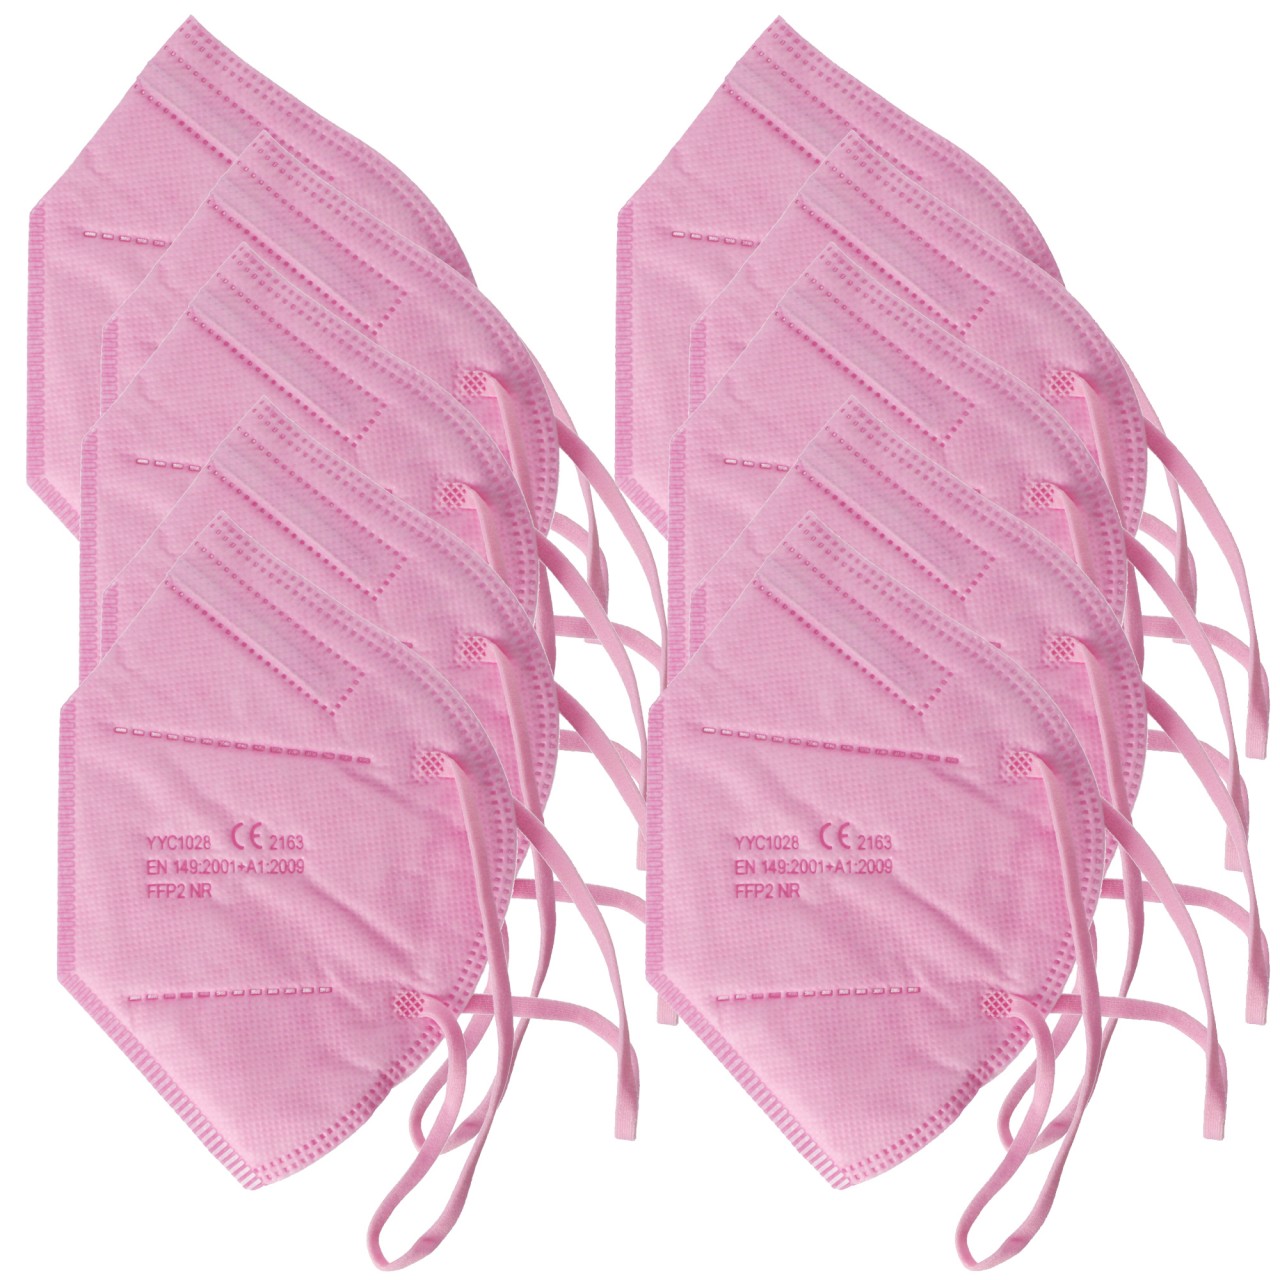 10 Stück FFP2 Maske Pink 5-Lagig, zertifiziert nach DIN EN149:2001+A1:2009, partikelfiltrierende Halbmaske, FFP2 Schutzmaske